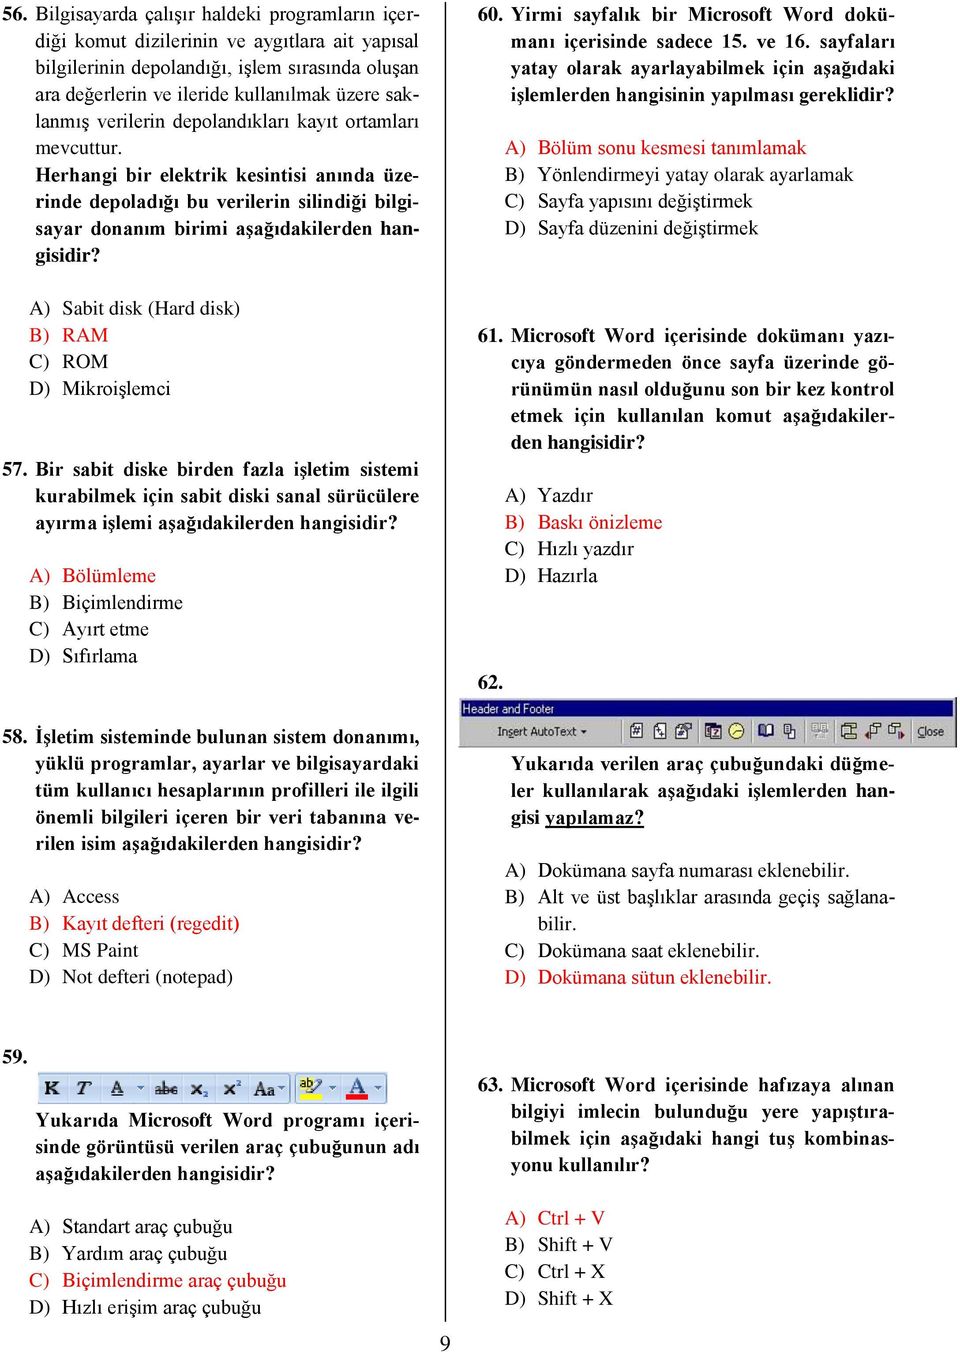 Yirmi sayfalık bir Microsoft Word dokümanı içerisinde sadece 15. ve 16. sayfaları yatay olarak ayarlayabilmek için aşağıdaki işlemlerden hangisinin yapılması gereklidir?